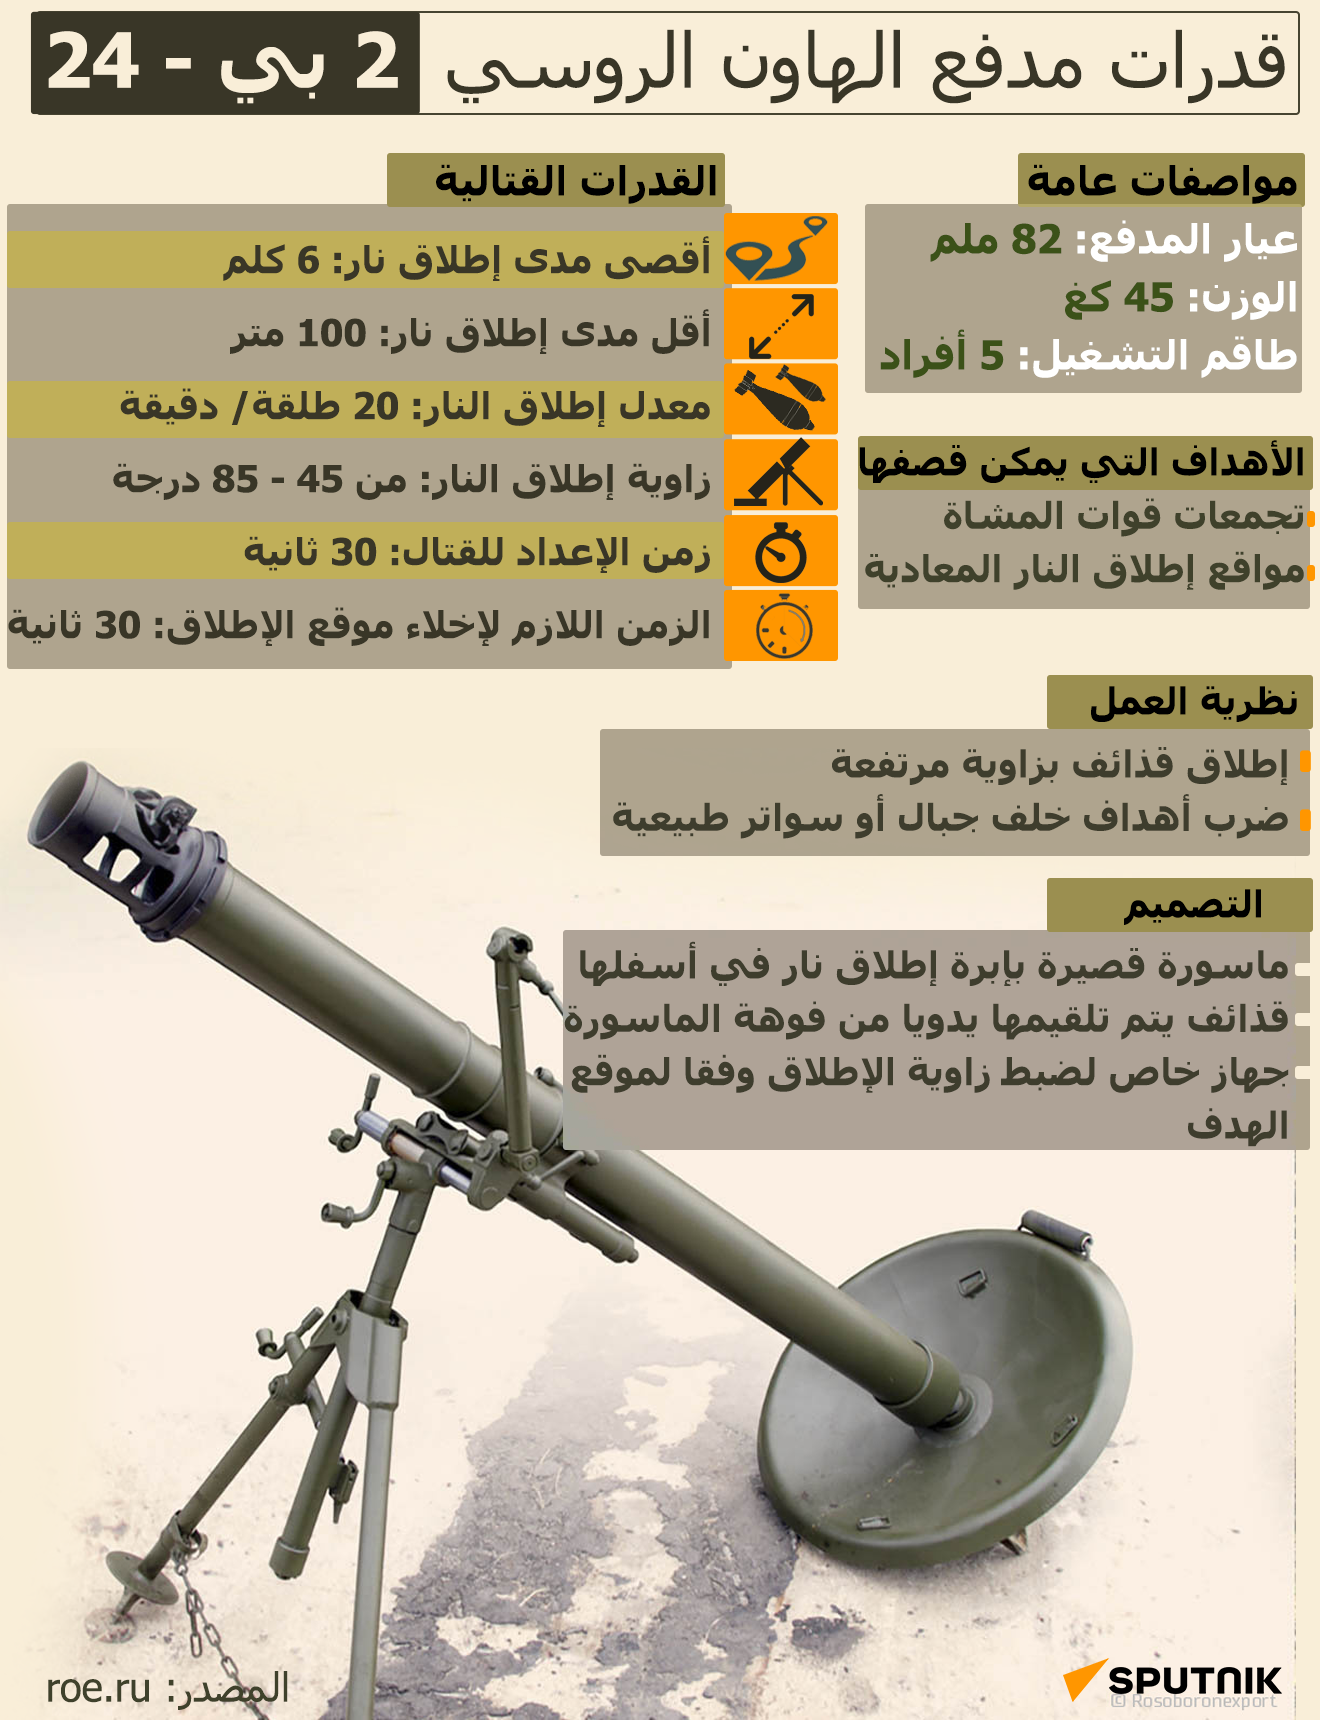 قدرات مدفع الهاون الروسي 2 بي - 24 - سبوتنيك عربي